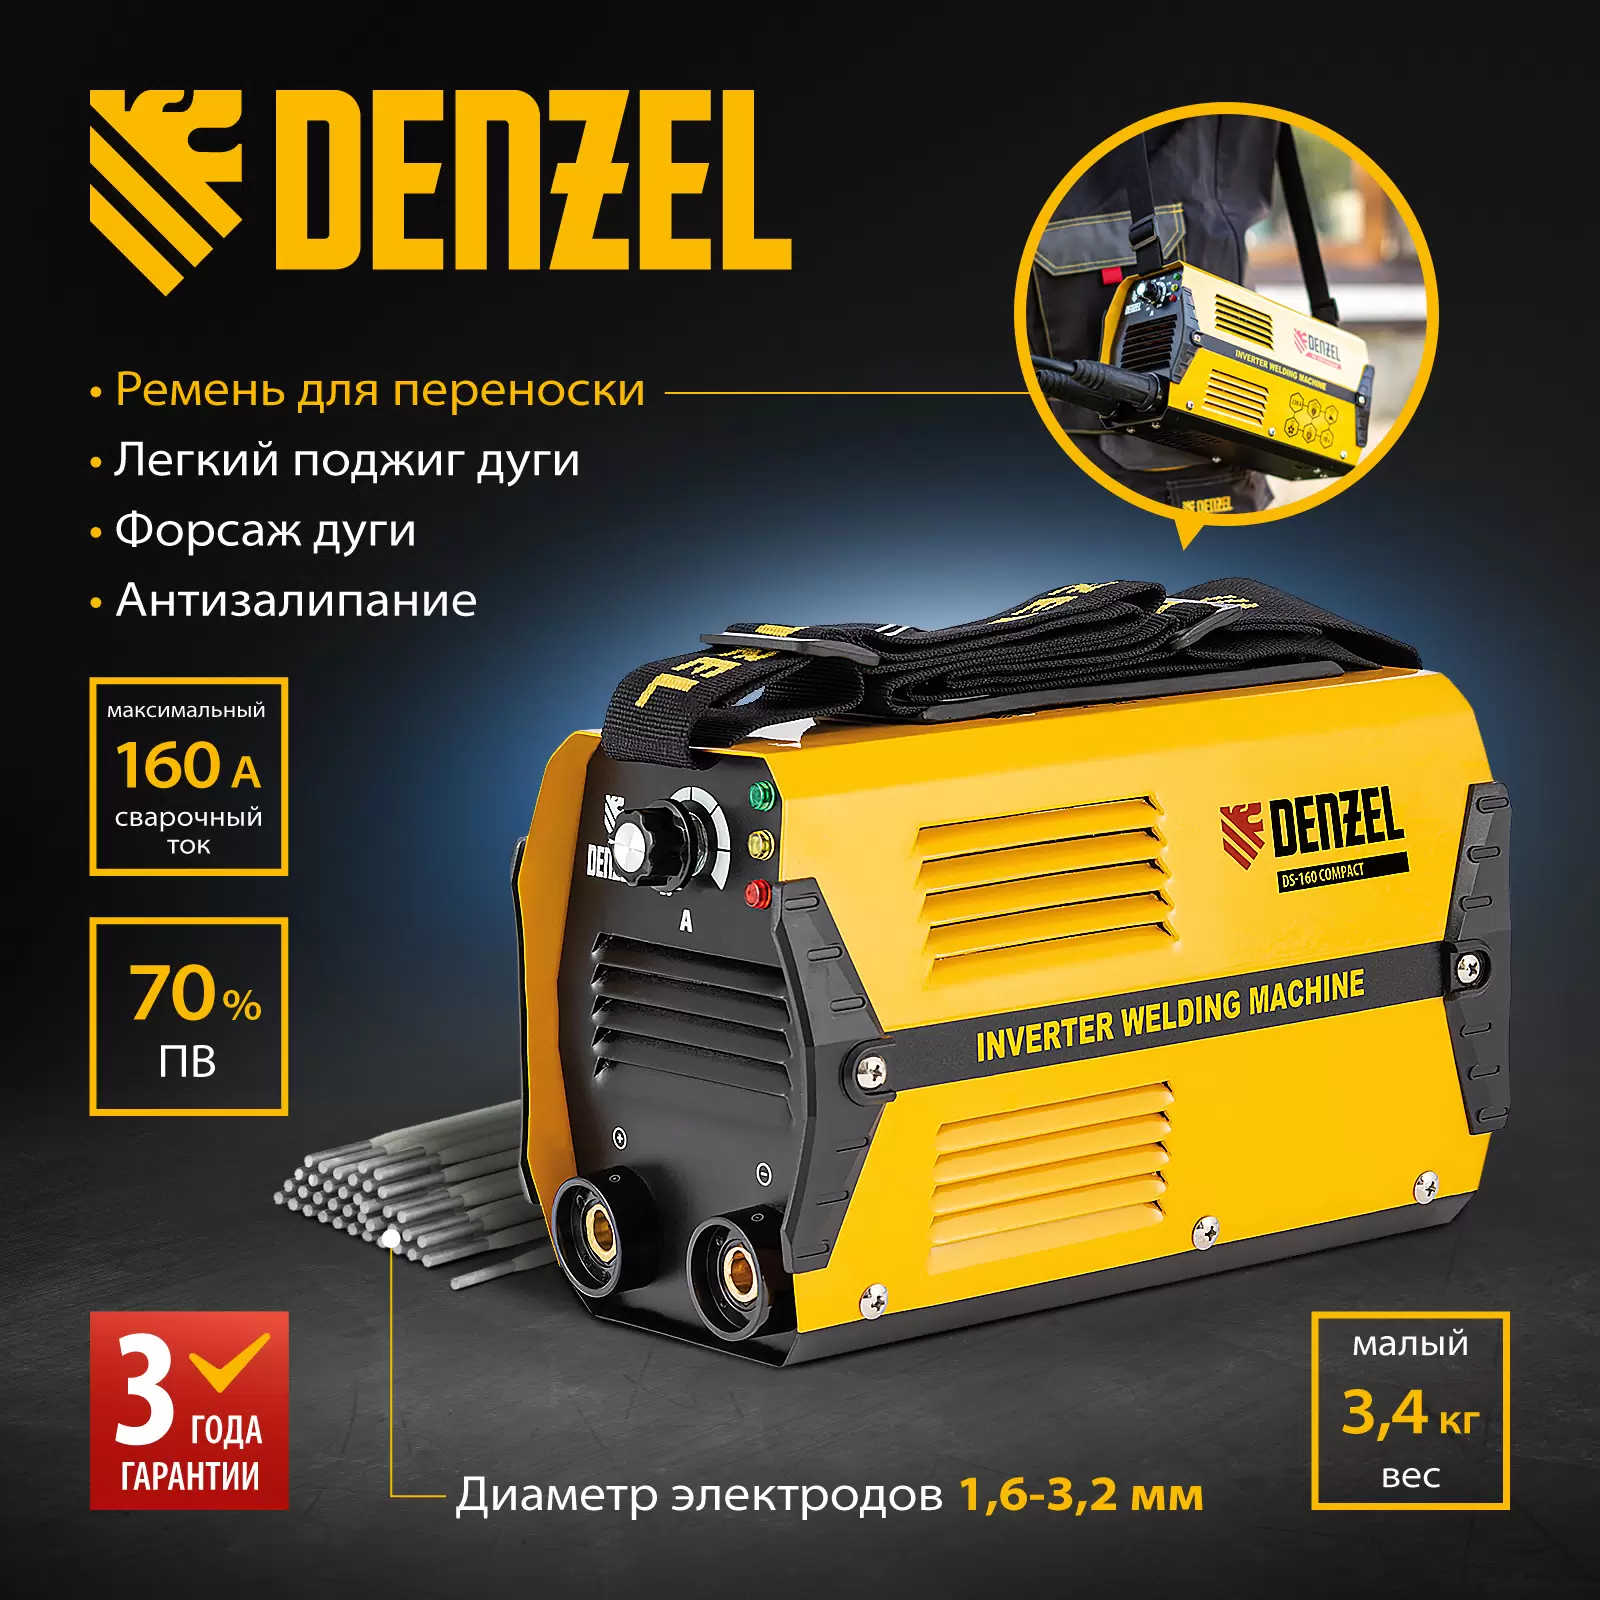 Сварочный аппарат инверторный DENZEL DS-160 Compact 94371 160А ПВ 70% - VLARNIKA в Донецке